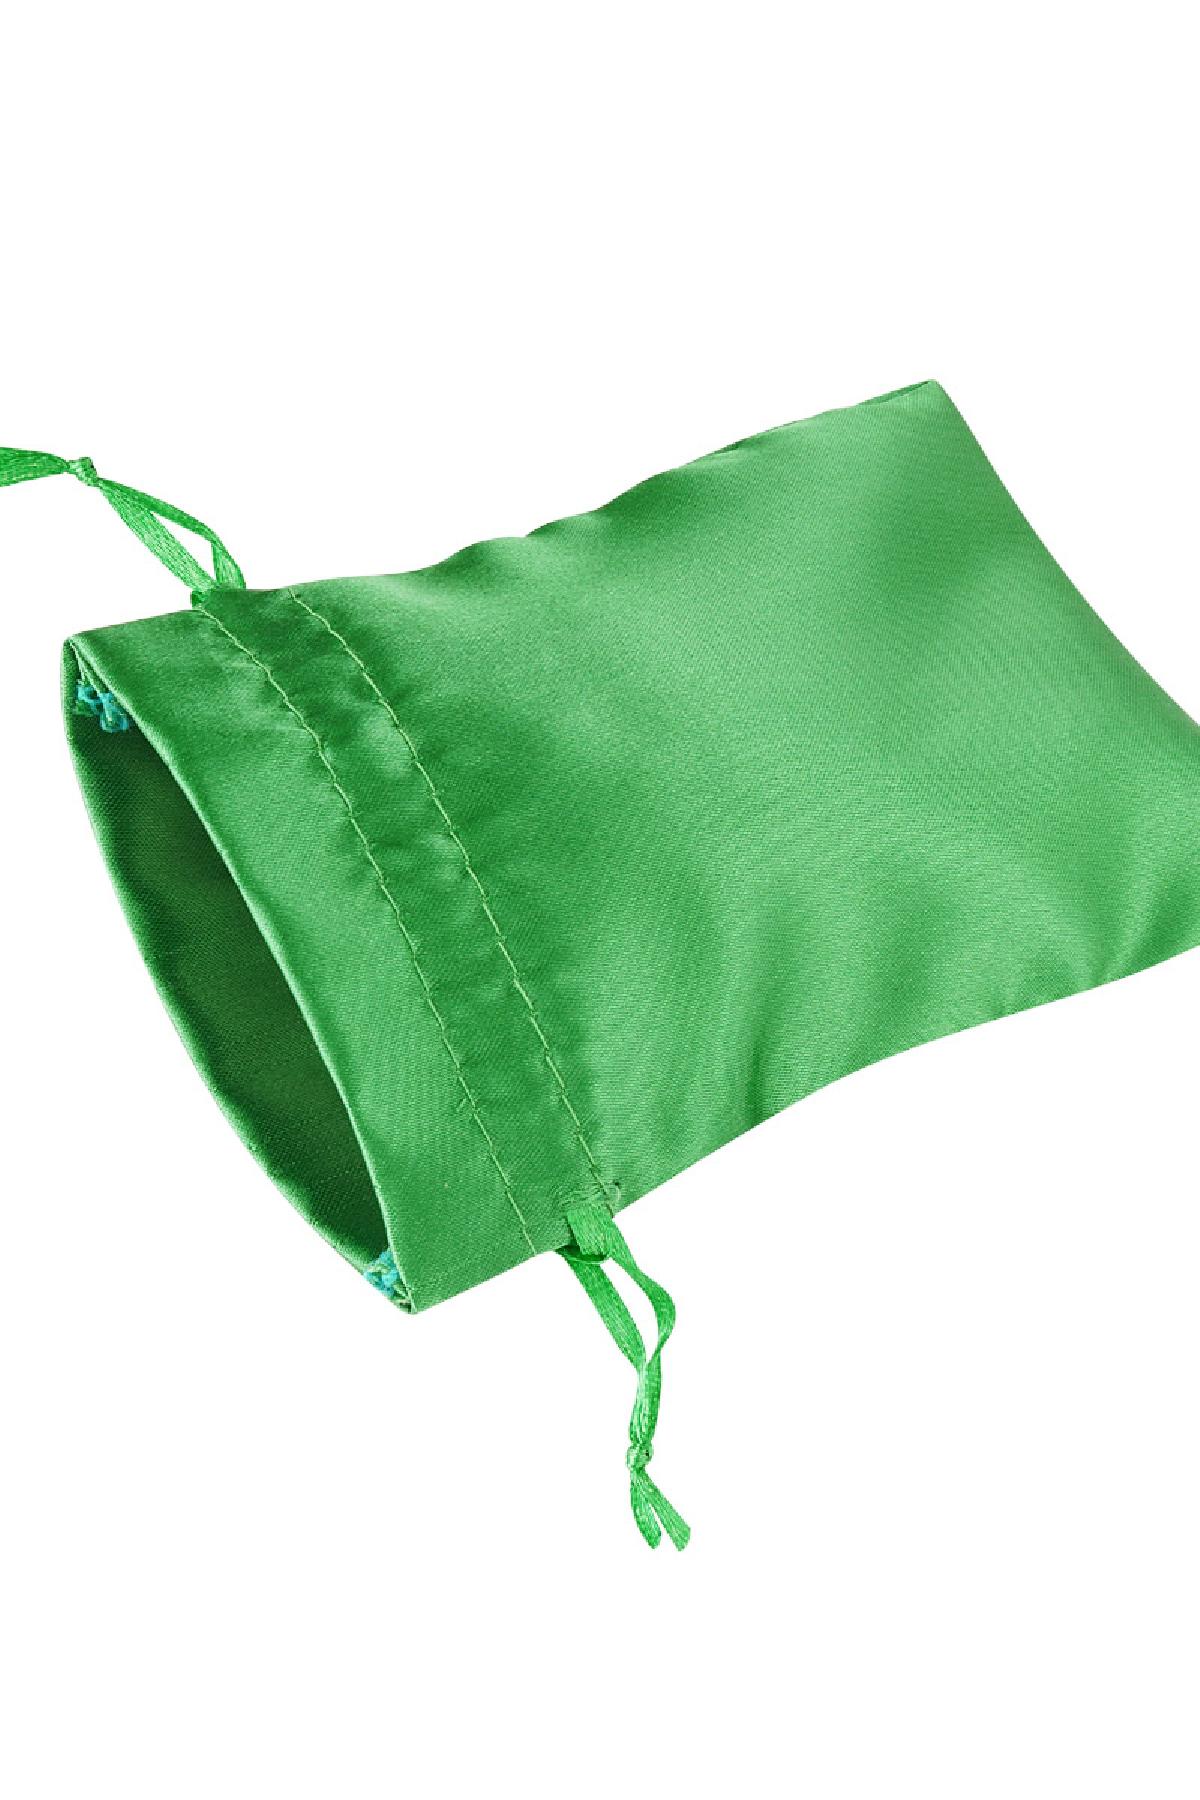 Schmuckbeutel Satin klein - grün Polyester h5 Bild2